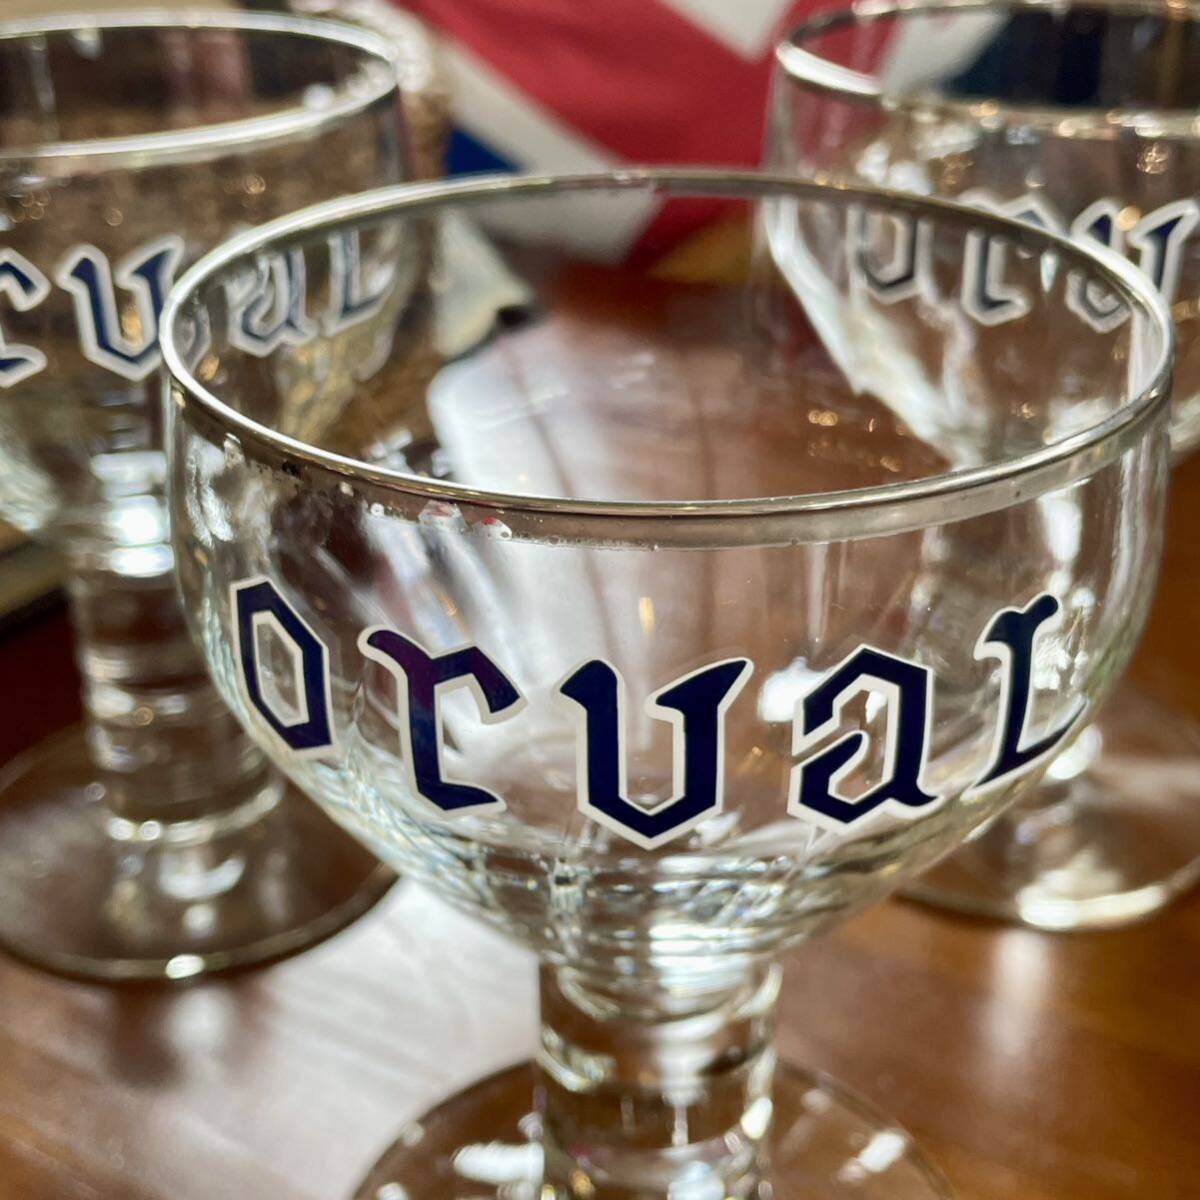 r197 ベルギー オルヴァル グラス 聖杯型 ゴブレットグラス 3点 カッコイイヴィンテージグラス コレクション ビールグラス の画像2